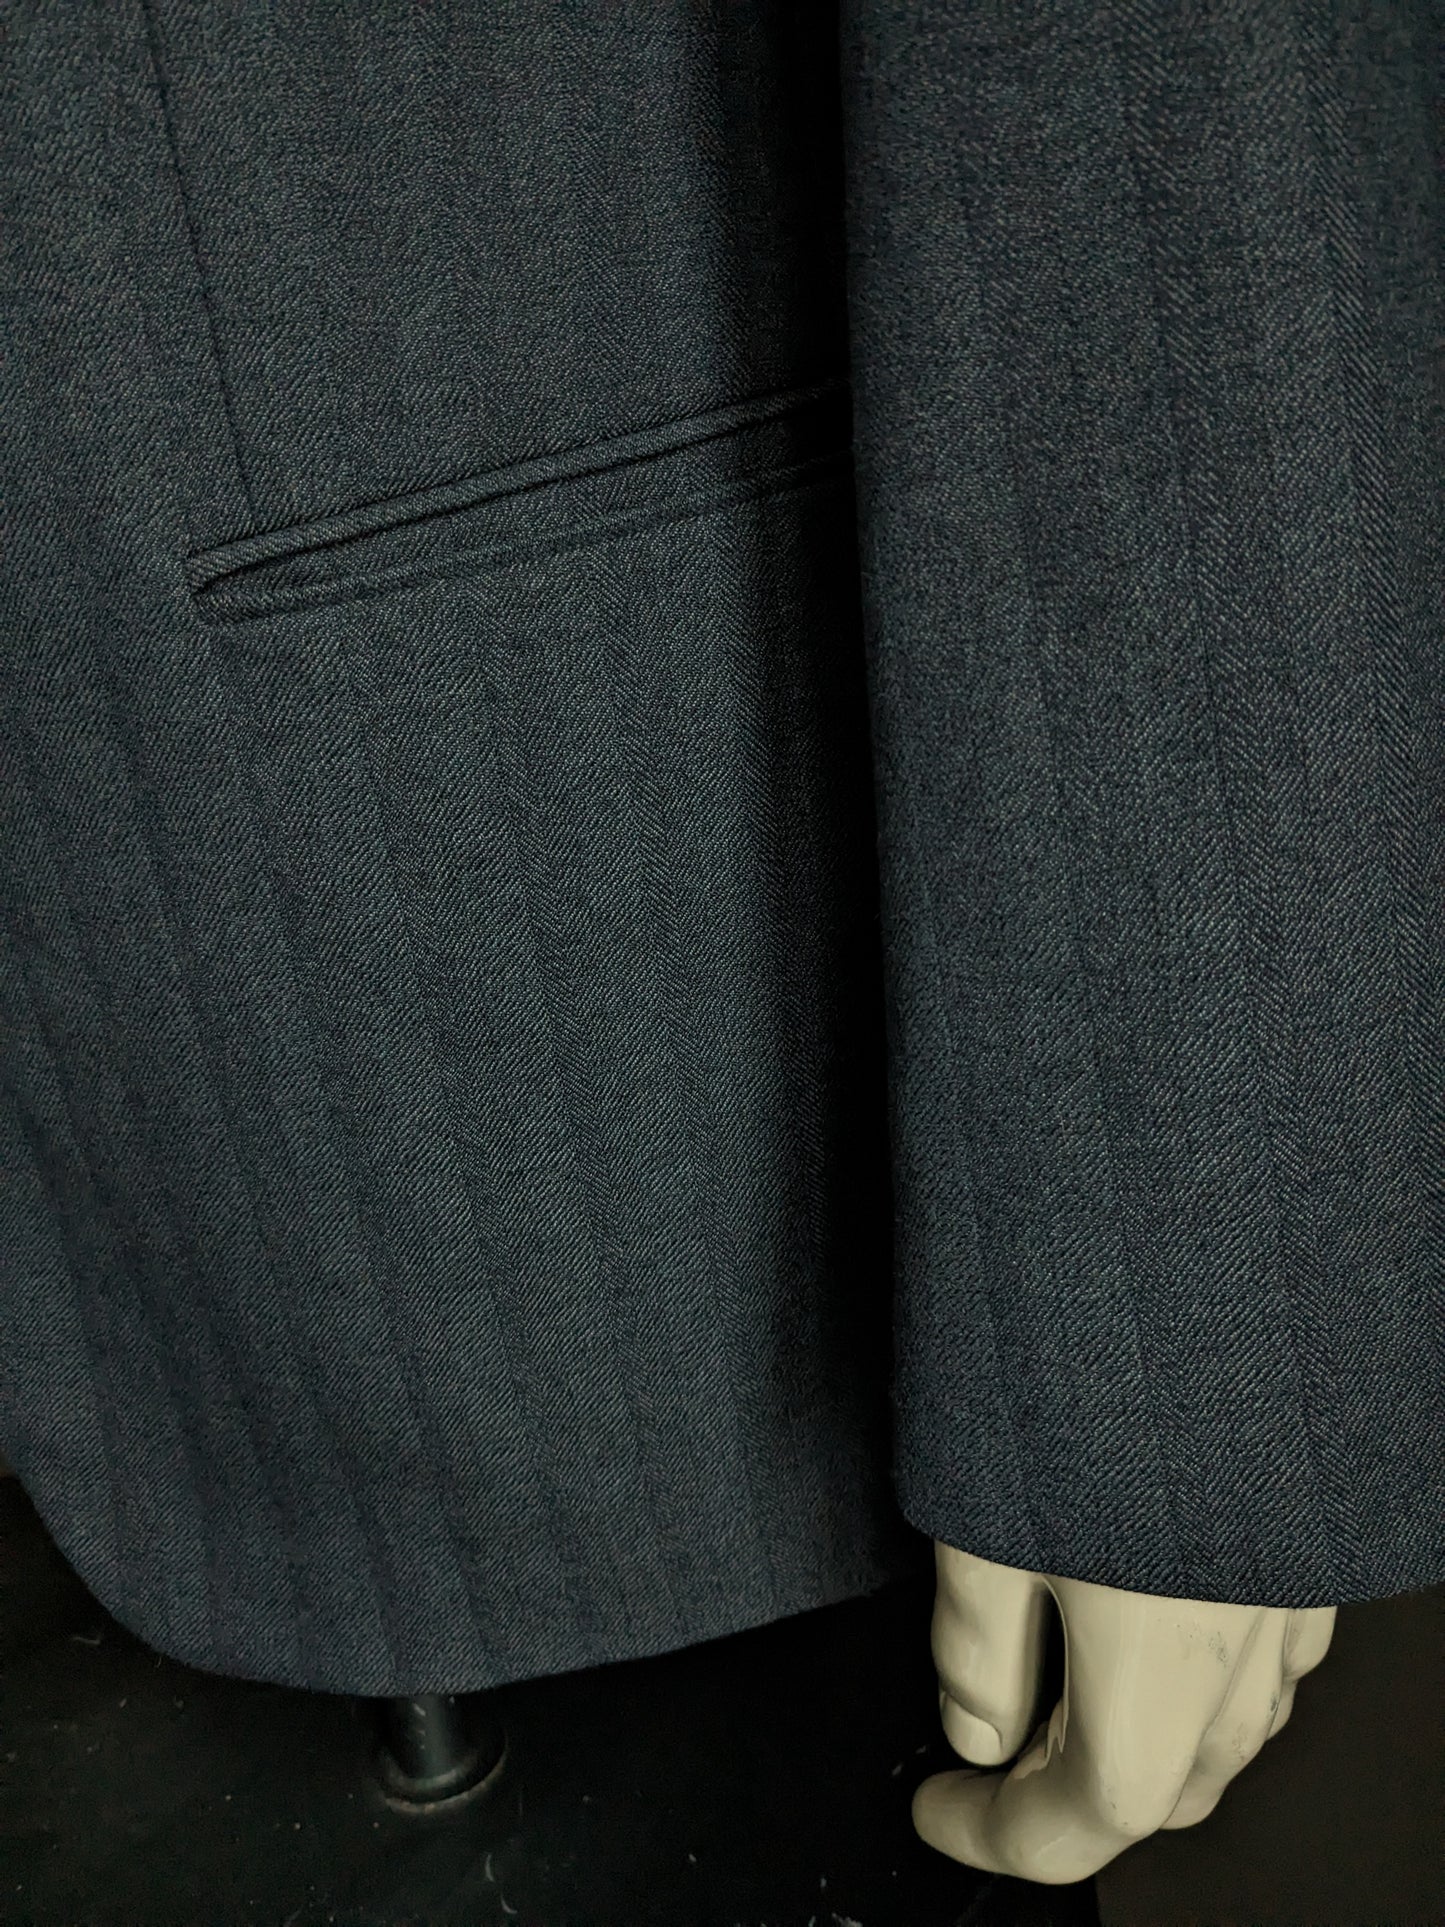 Giacca di lana Varteks. Motivo a spina di pesce nero grigio. Taglia 56 / XL. 45% lana.